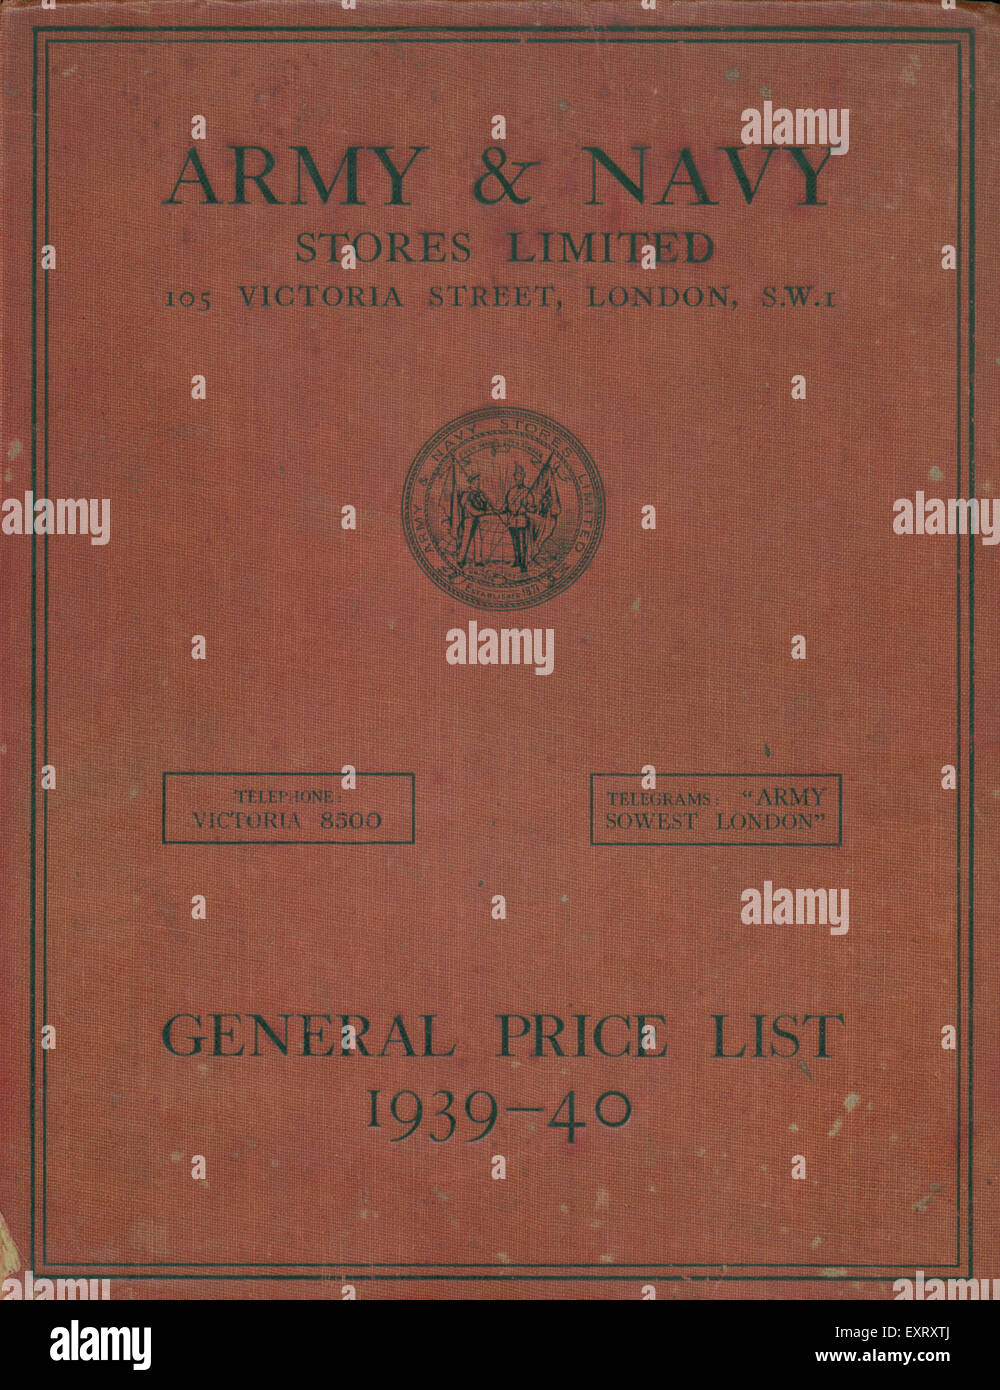 1930 el ejército y la armada británica almacena Ltd portada de catálogo Foto de stock